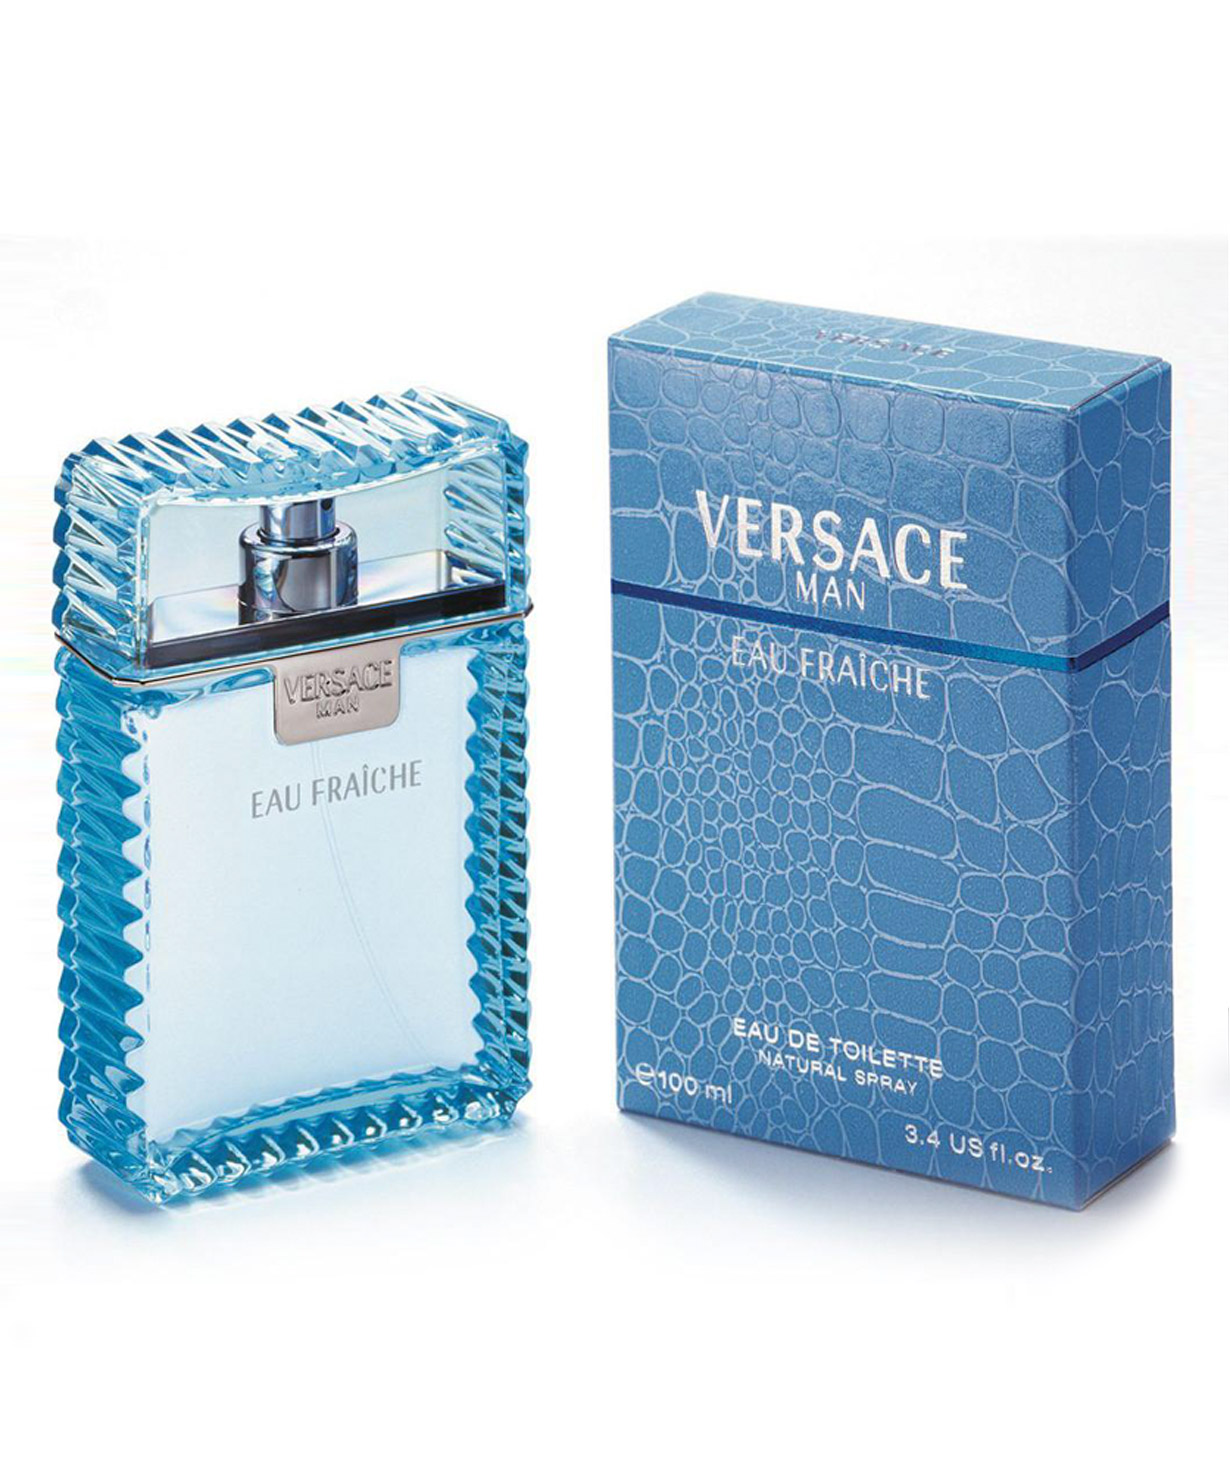 Perfume `Versace eau fraiche` eau de toilette men's